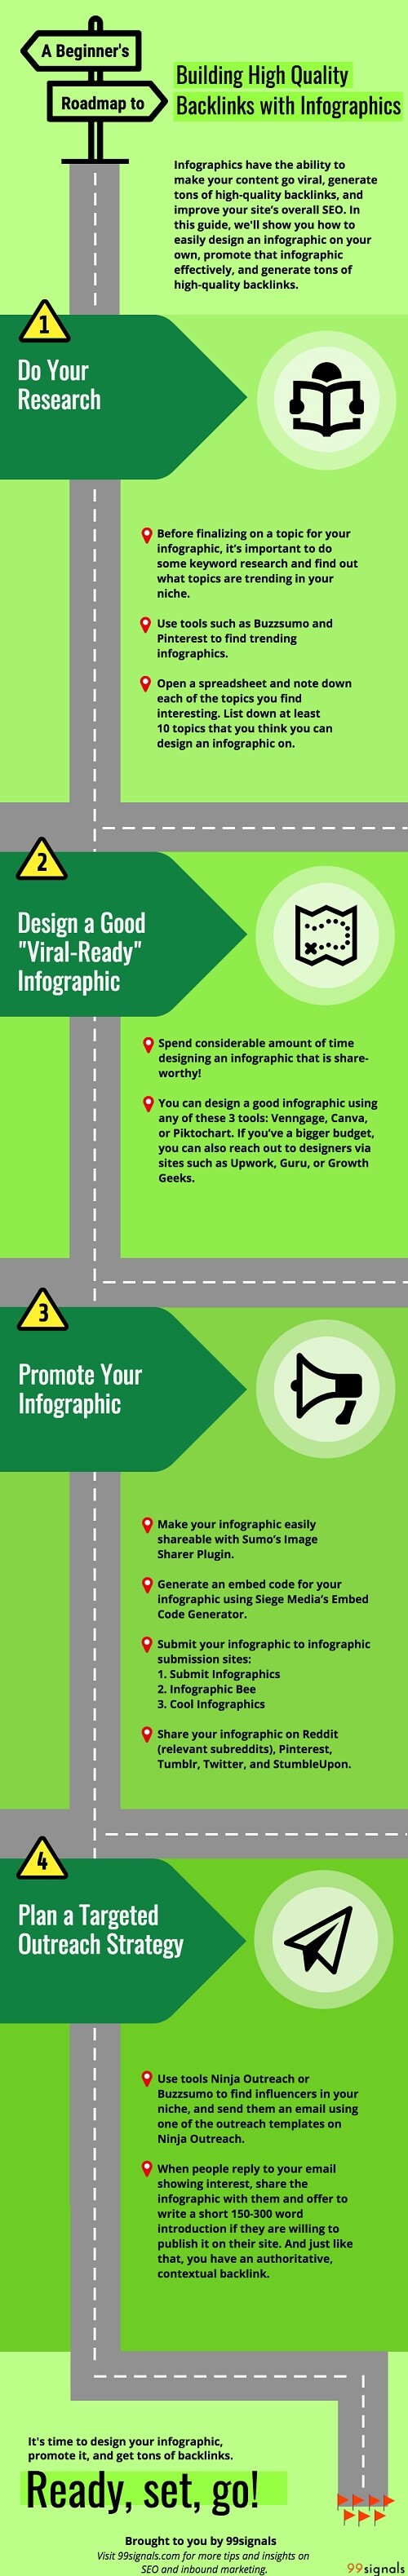 Cómo conseguir backlinks de calidad con infografías #infografía